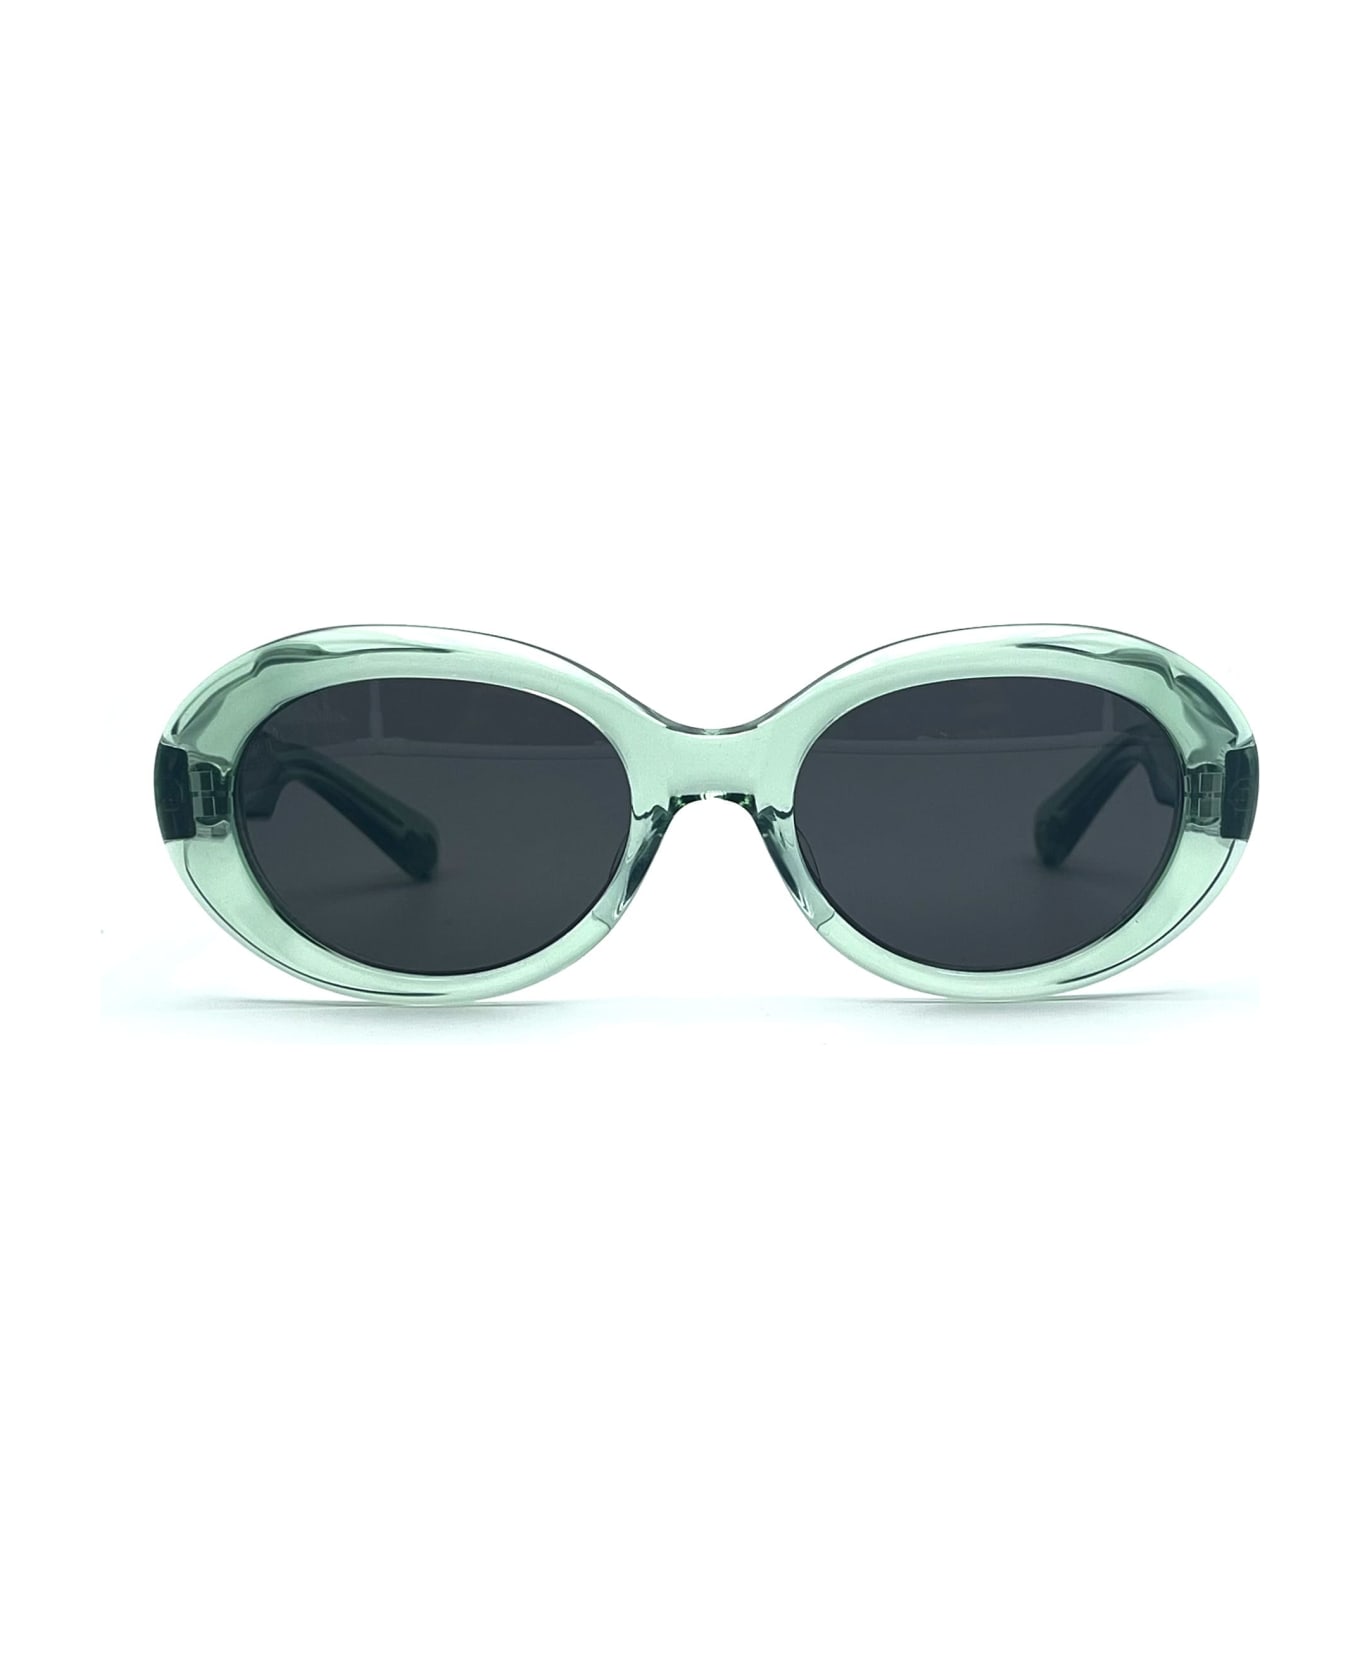 Matsuda M1034 - Mint Sunglasses - mint green サングラス